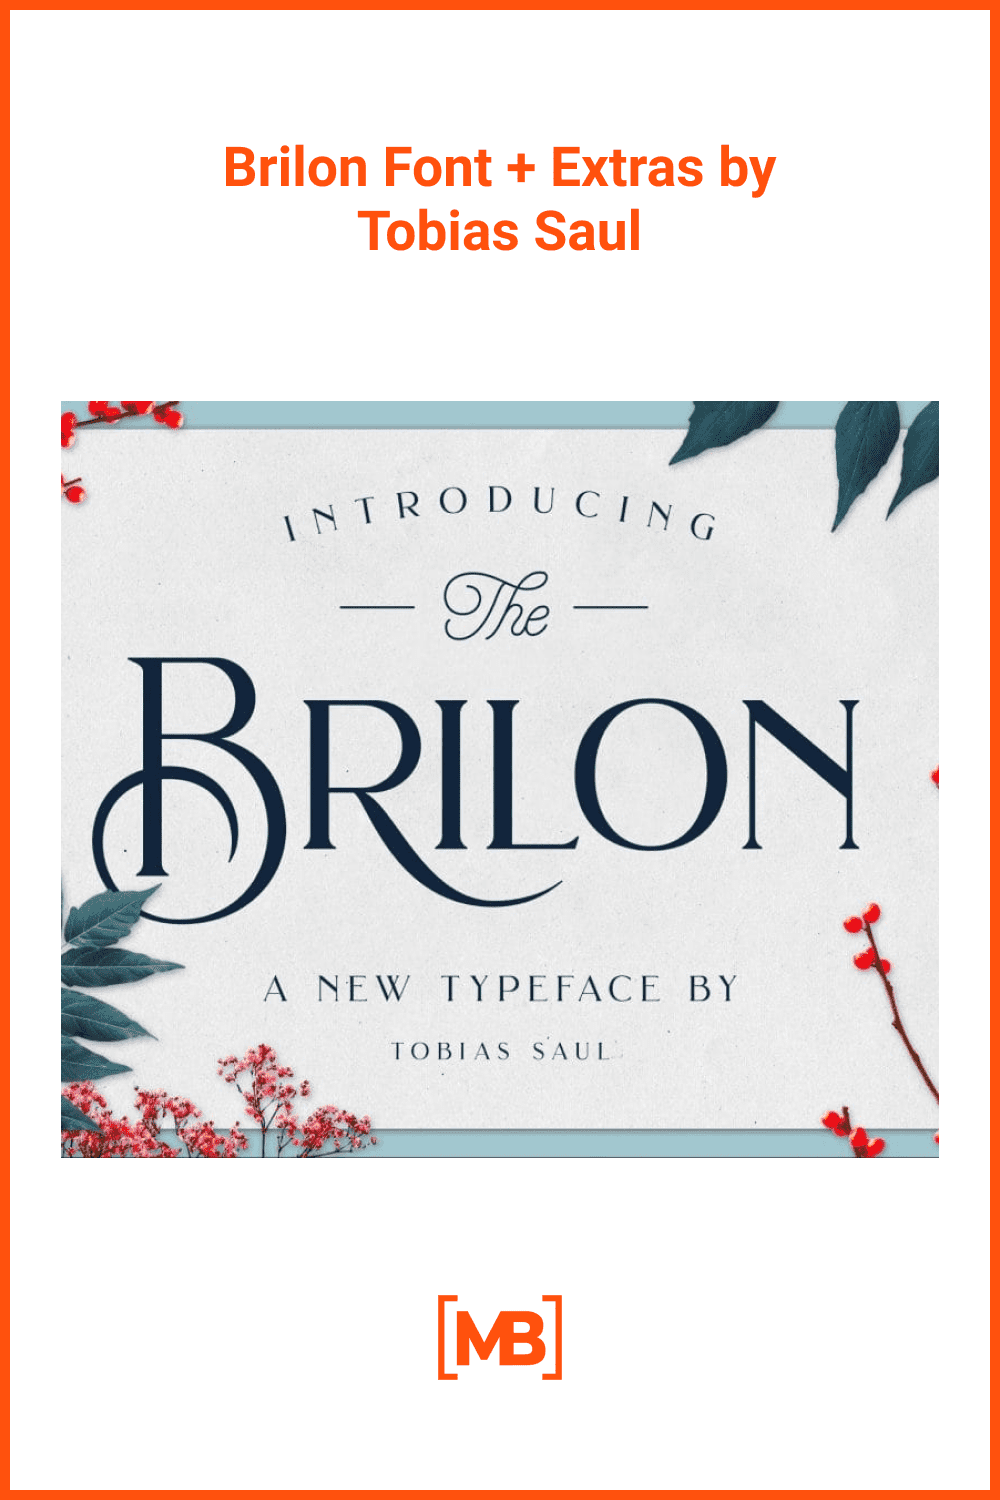 Brilon font + extras by Tobias Saul.